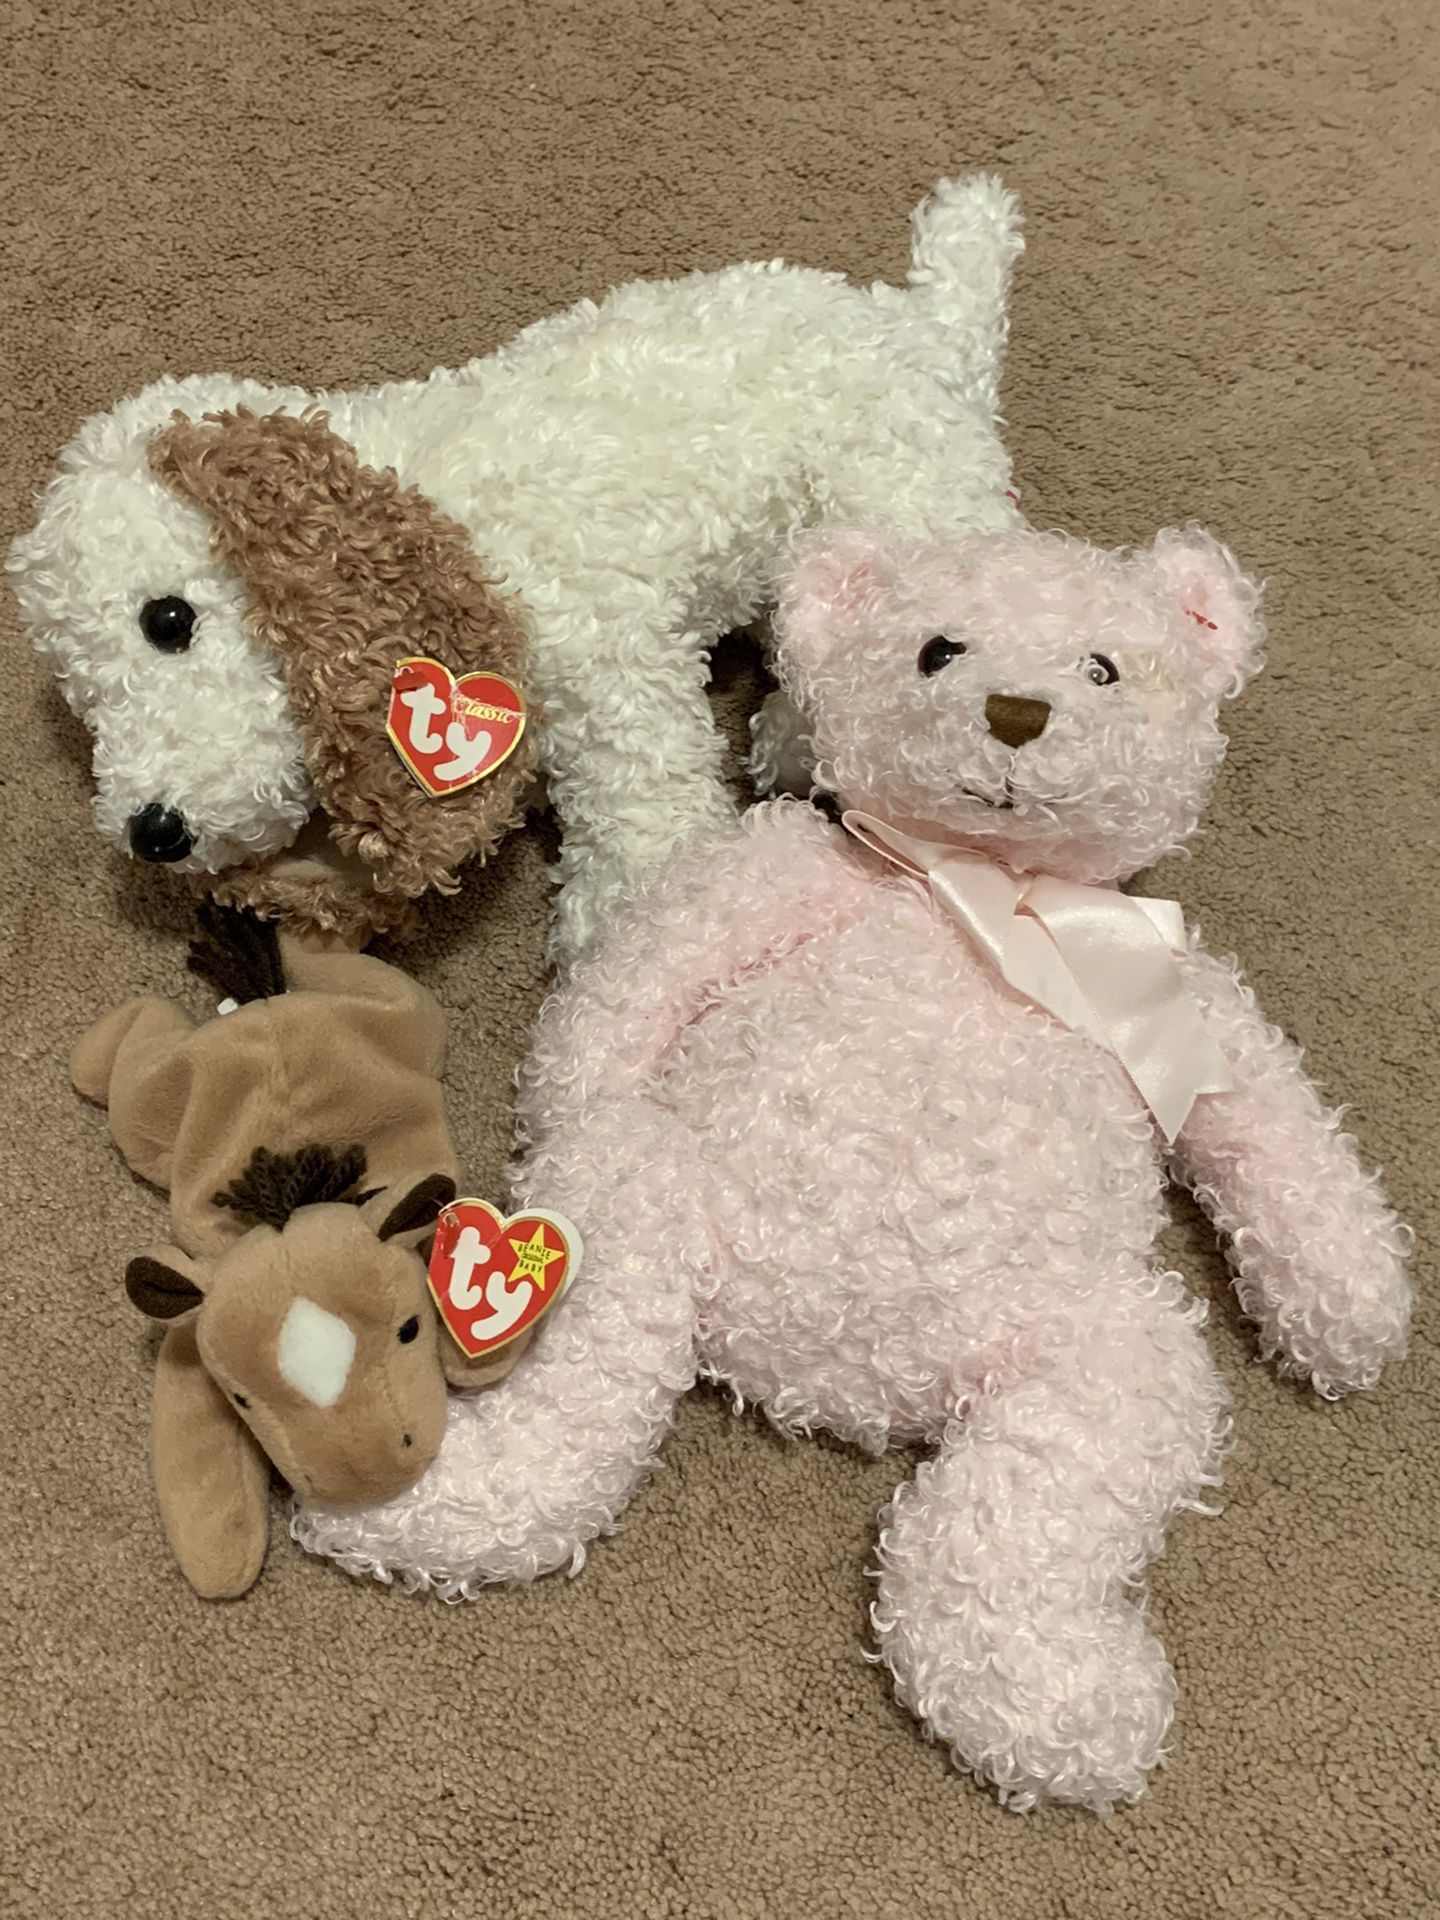 Stuffed animals / ty beanie babies